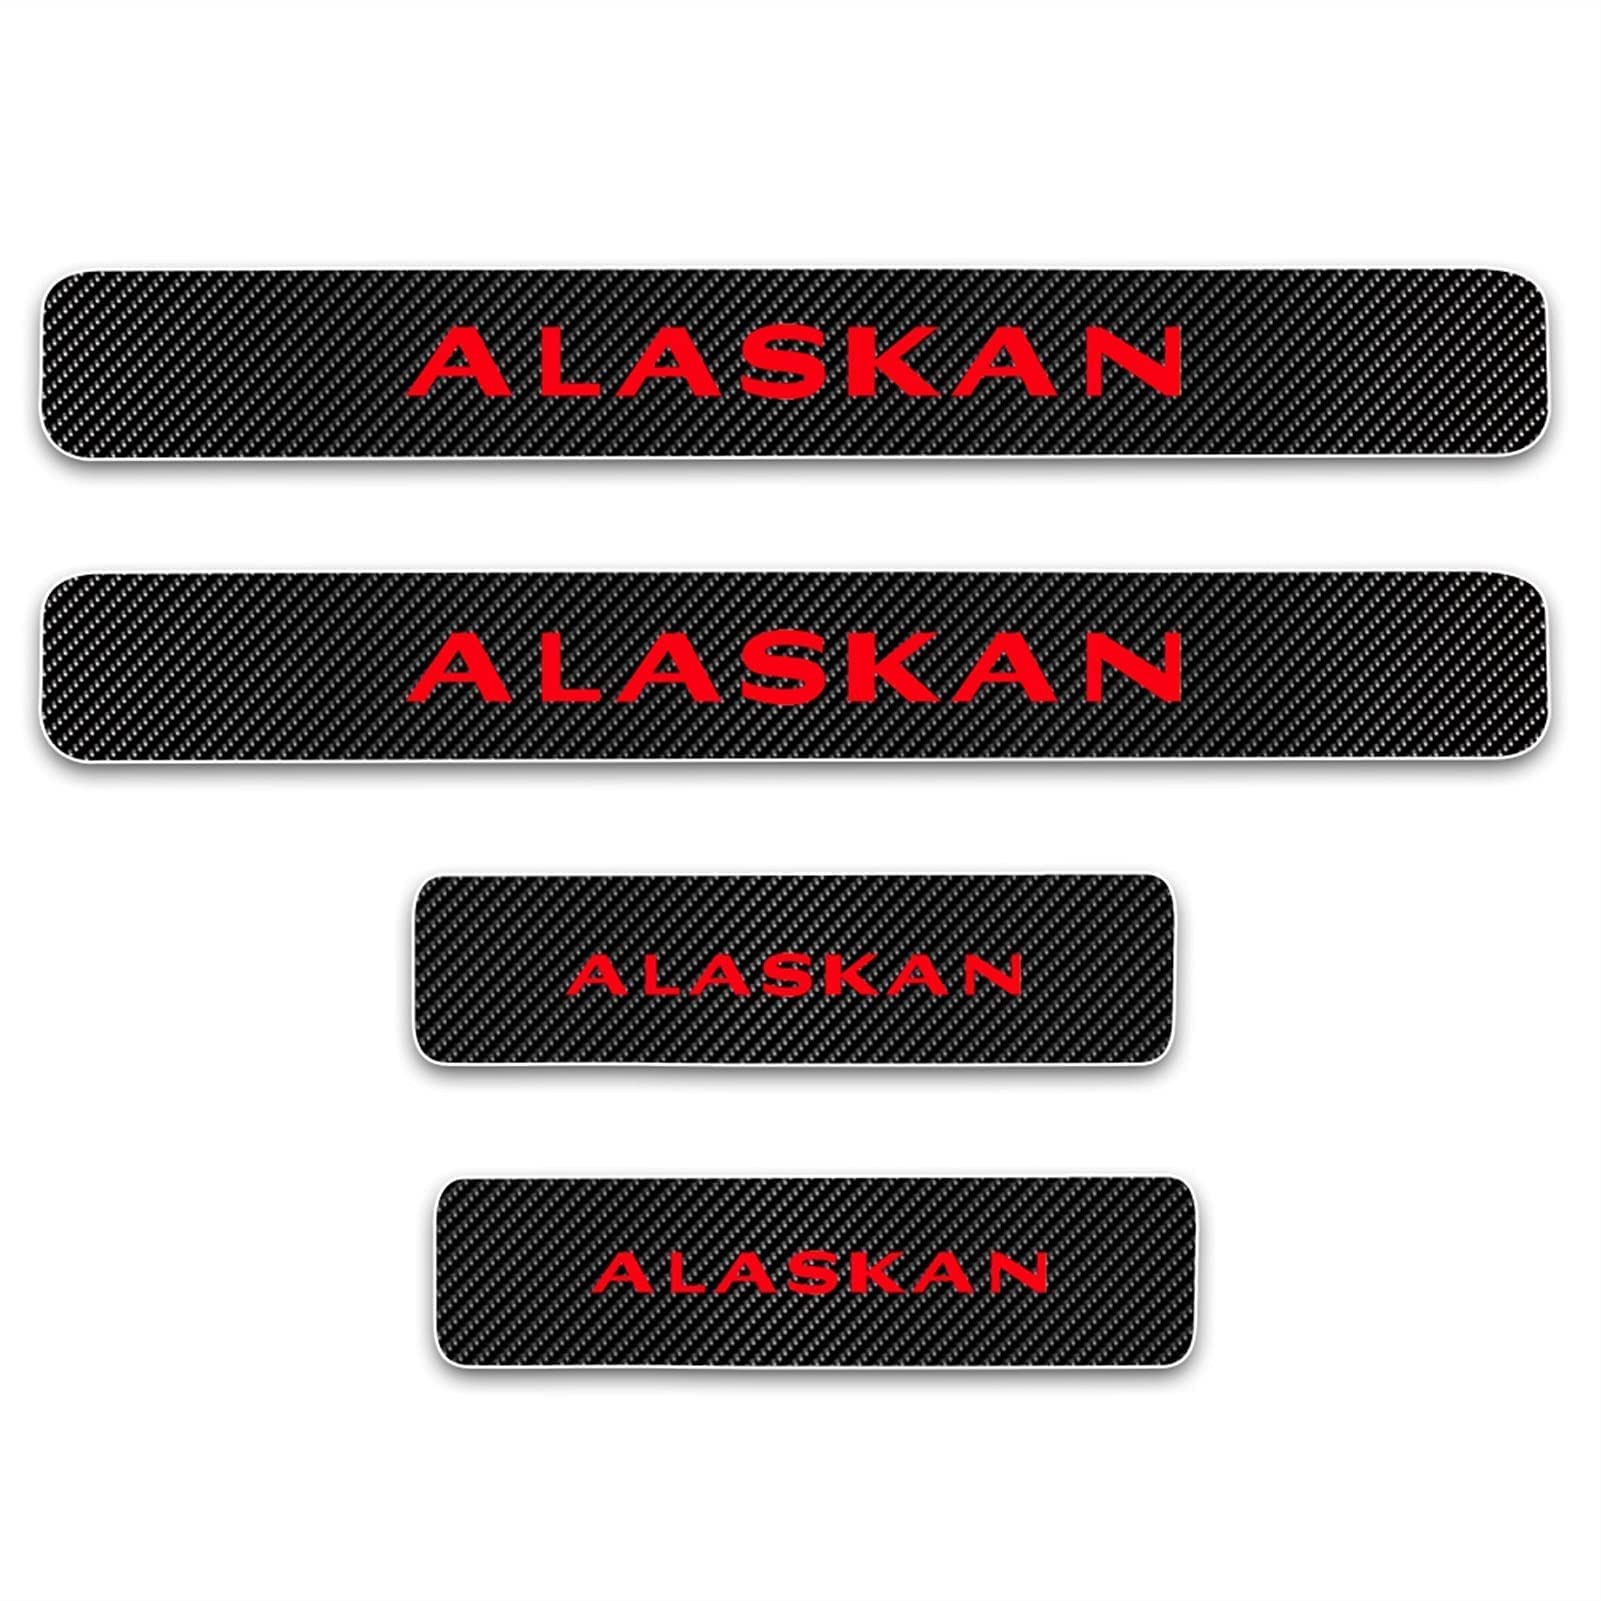 Auto Einstiegsleisten für Ren-Ault Alaskan Tuning Zubehör, 4 Stück Kohlefaser-Türschwellen Aufkleber, Kratzfestes und Verschleißfestes - Innen-Styling-Zubehör,Red von YUPACK